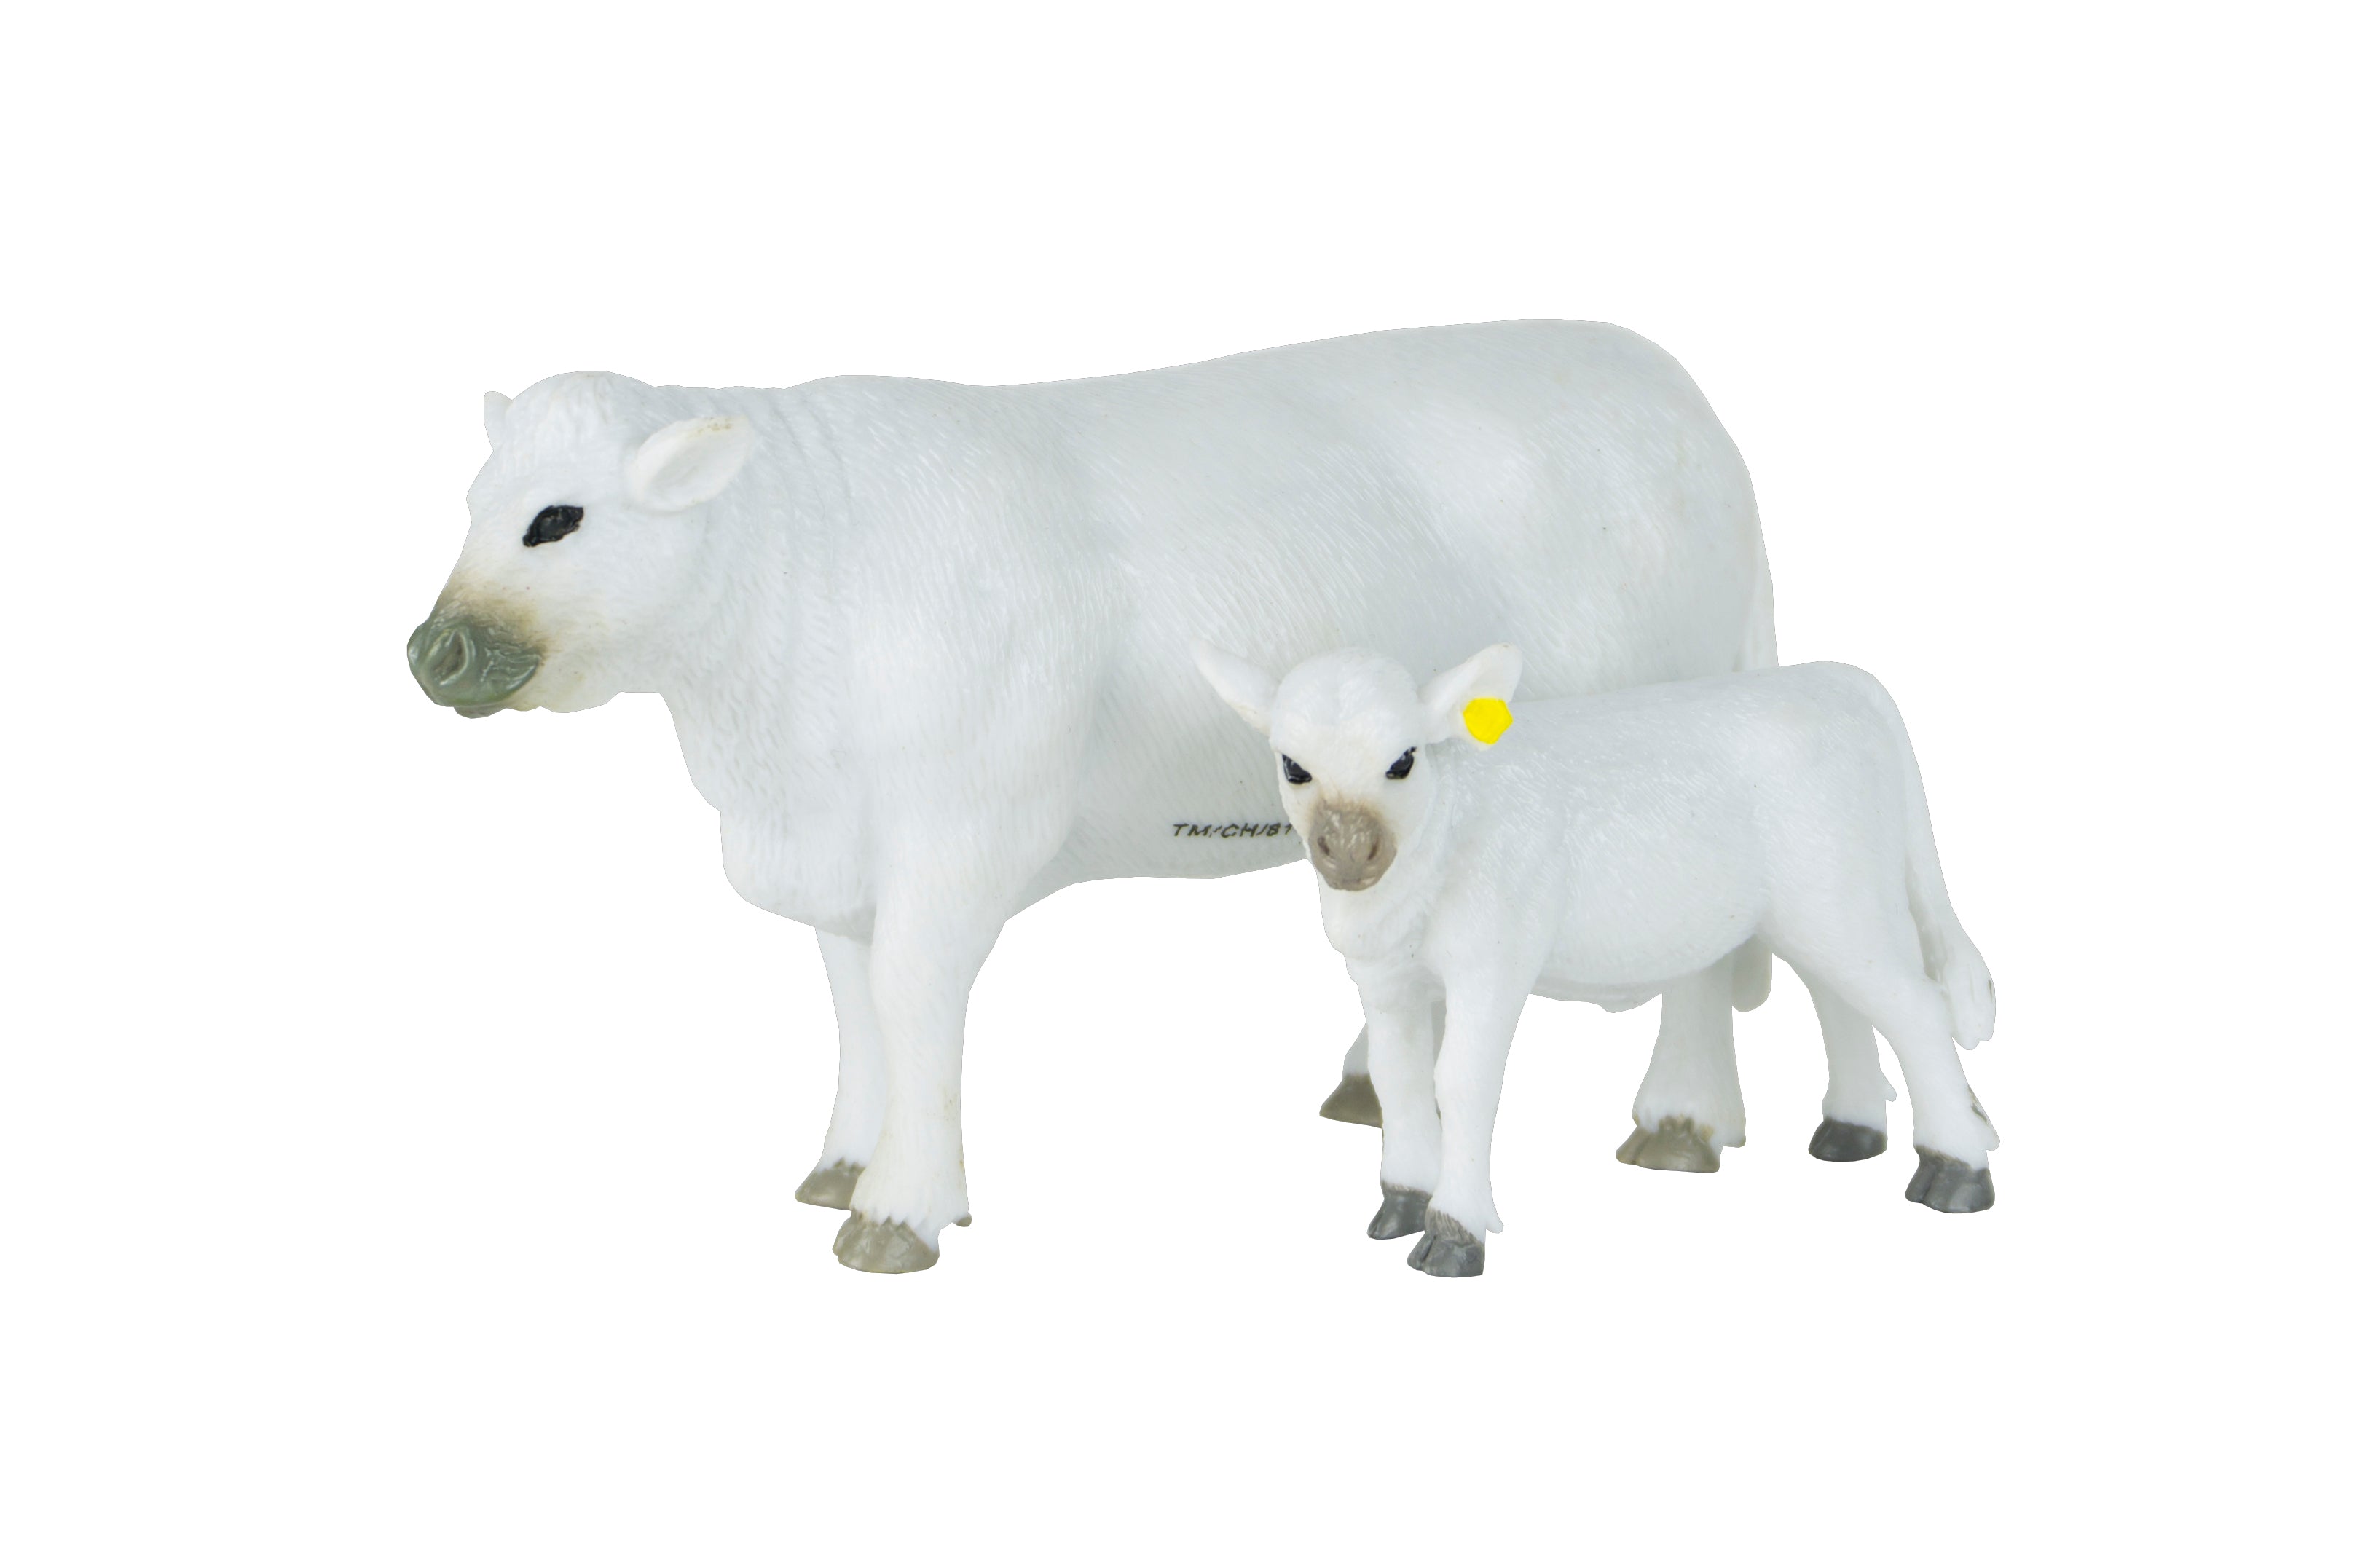 Charolais Cow & Calf